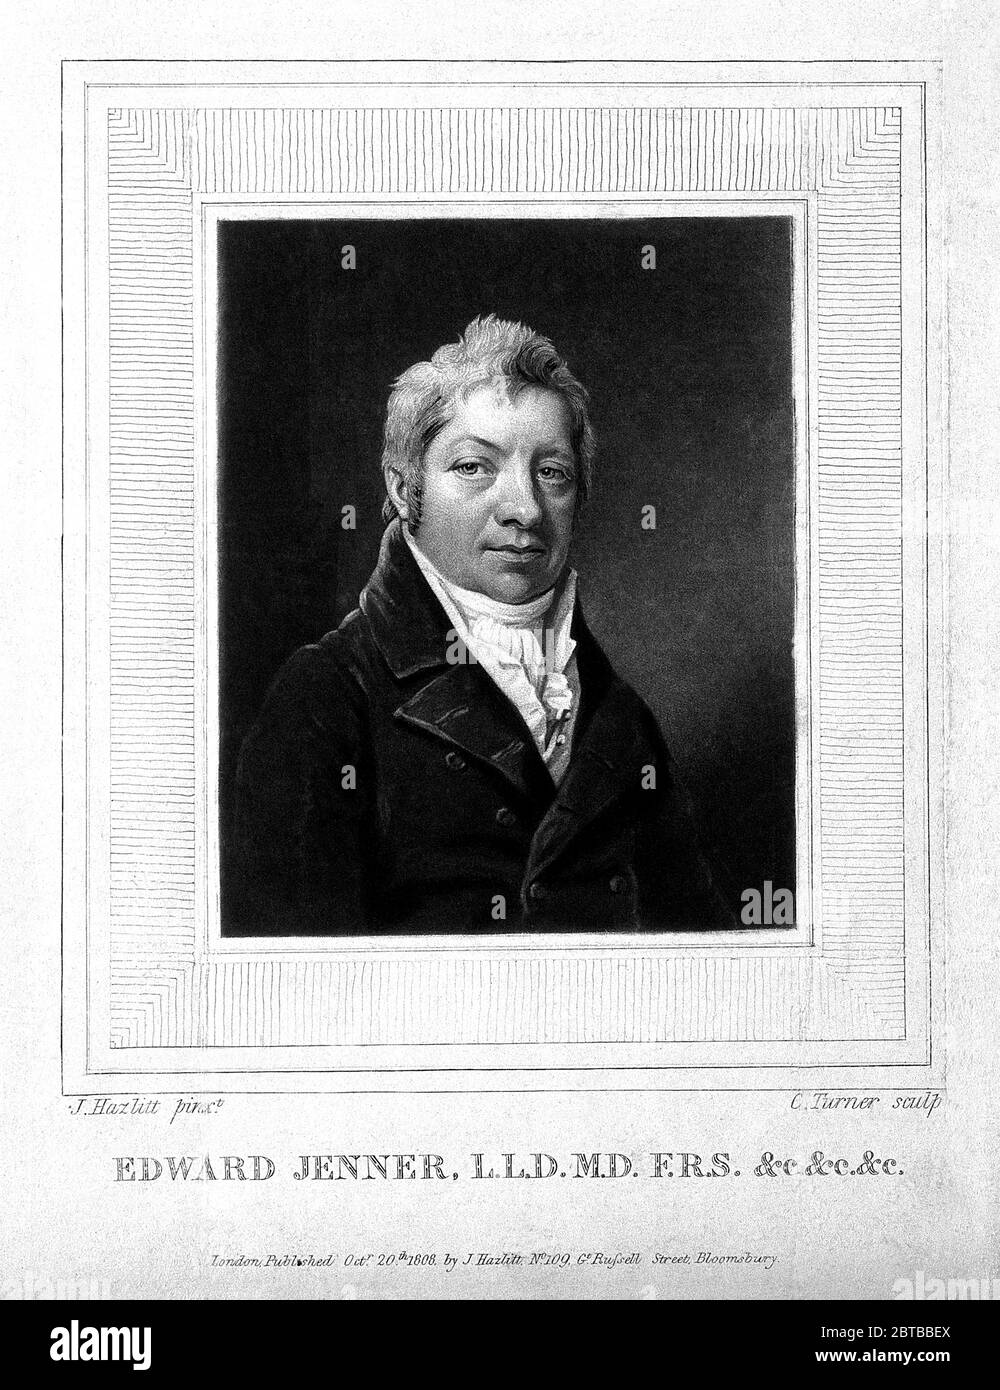 1808 , GROSSBRITANNIEN: Der britische Arzt, Virologe und Naturforscher EDWARD JENNER ( 1749 - 1823 ), der an der Entwicklung des POCKENIMPFES mitwirkte. Porträt von C. Turner nach John Hazlitt , 1808 . - IMPFUNG - VIRUS - VIROLOGO - VIROLOGE - ANTIVAIOLOSA - ANTIVAIOLO - ANTI-VAIOLO - ANTIVAIOLO - VACCINAZIONE - foto storiche - scienziato - Wissenschaftler - Portrait - ritratto - GRAND BRETAGNA - DOTTORE - MEDICO - MEDICINA - Medizin - SCIENTIZA - WISSENSCHAFT - illustrazione - Illustration --- Archivio GBB Stockfoto